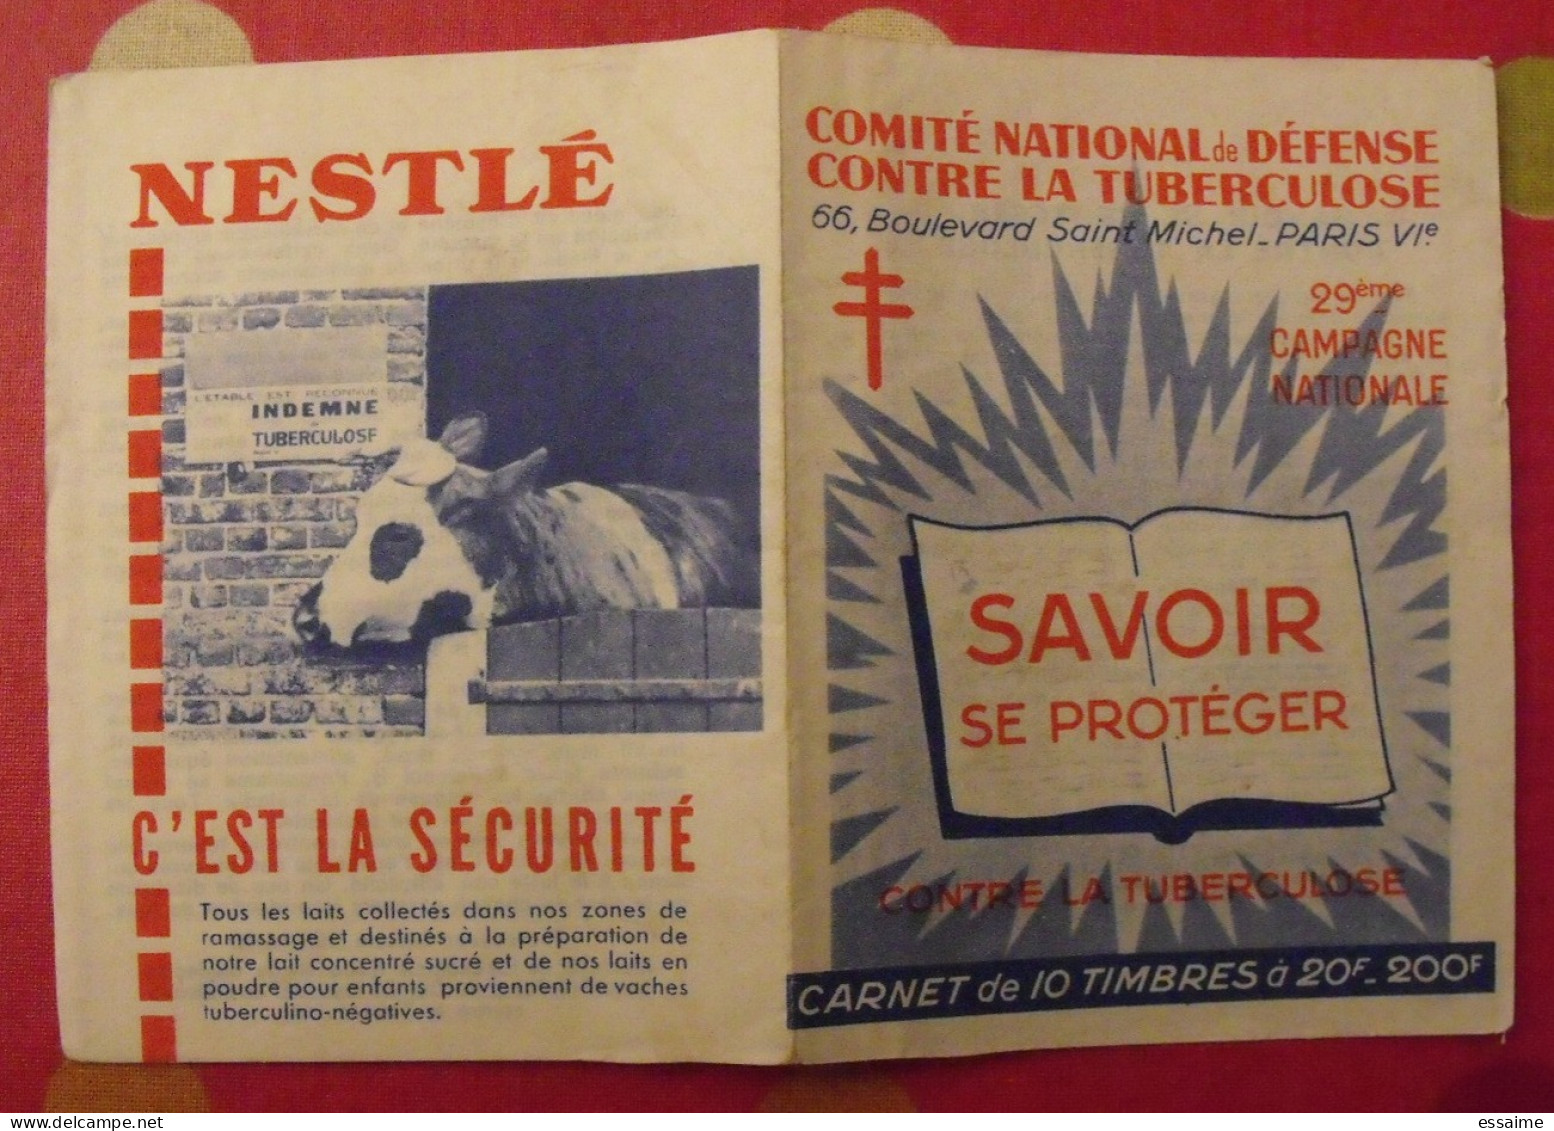 Carnet De Timbres Antituberculeux 1959-60. Pub Nestlé . Tuberculose Anti-tuberculeux. - Tegen Tuberculose